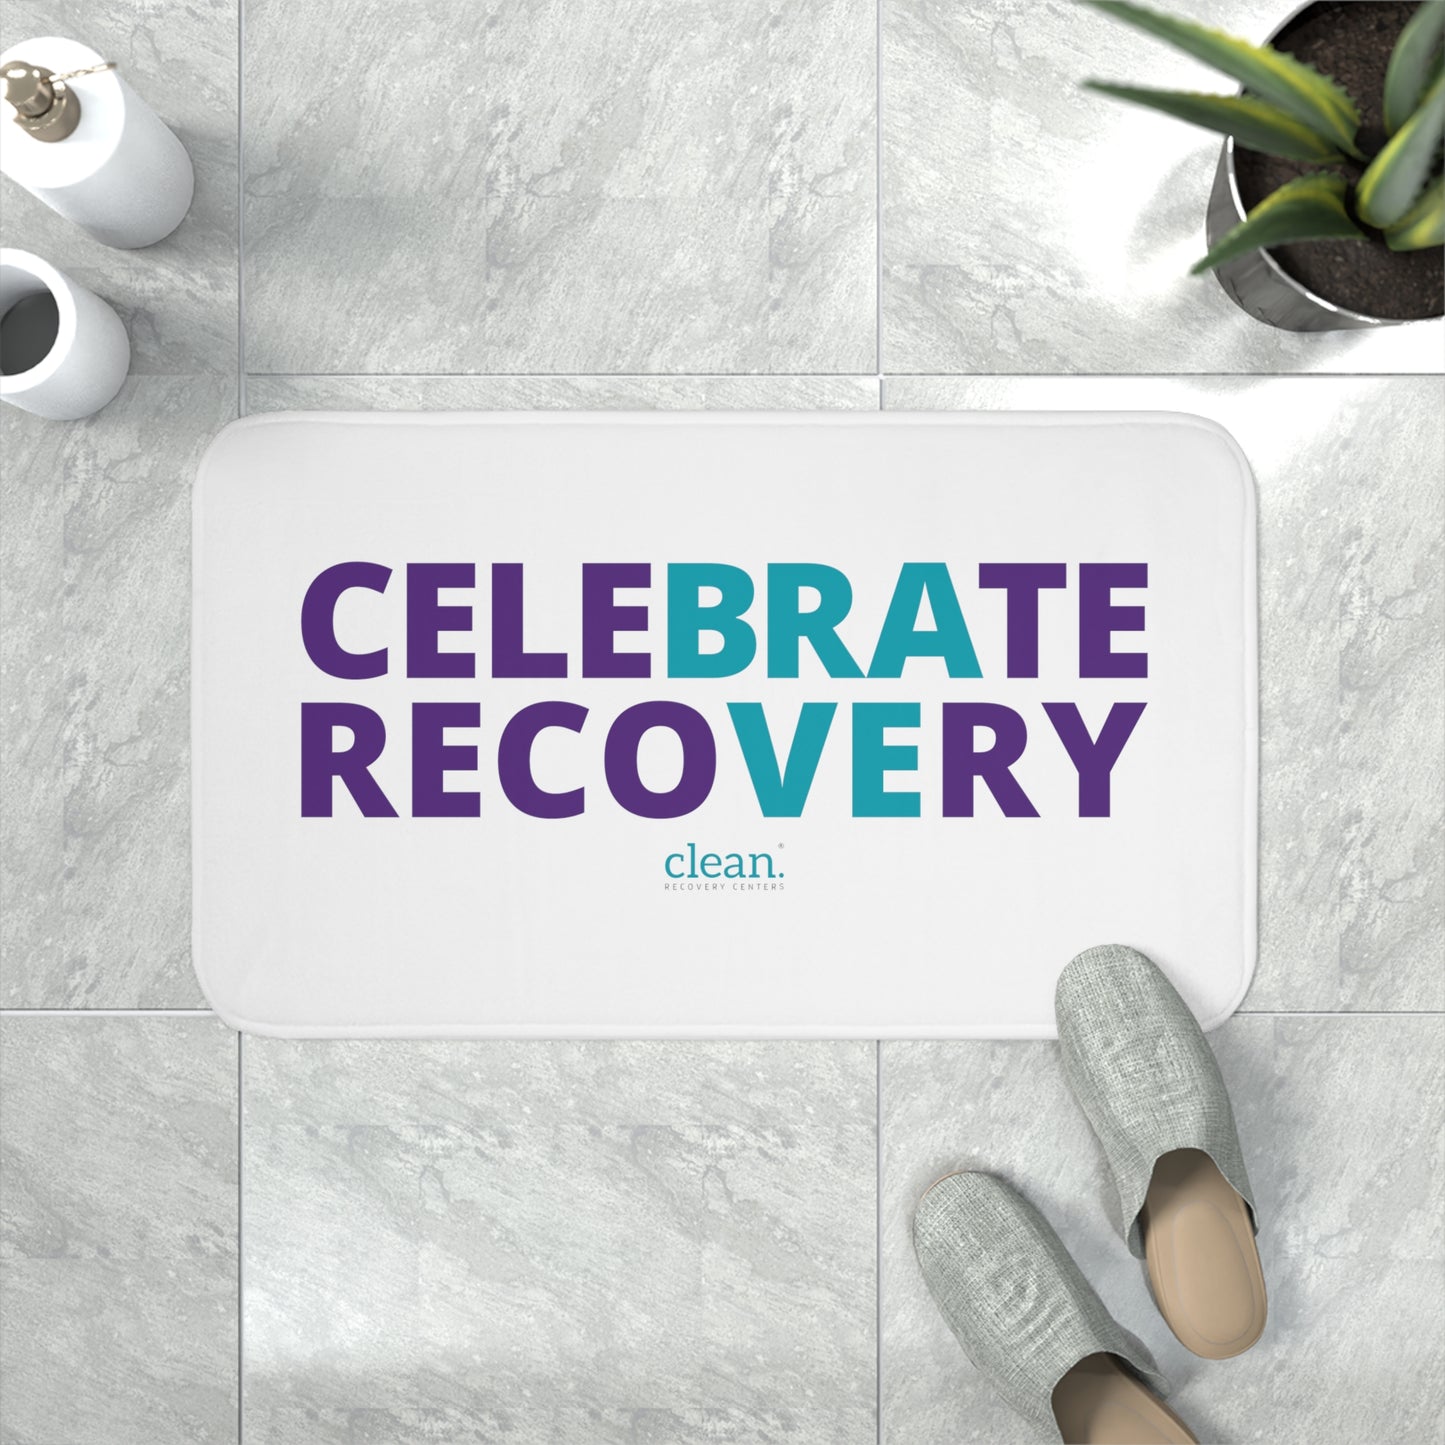 Celebrate Recovery Memory Foam Bath Mat